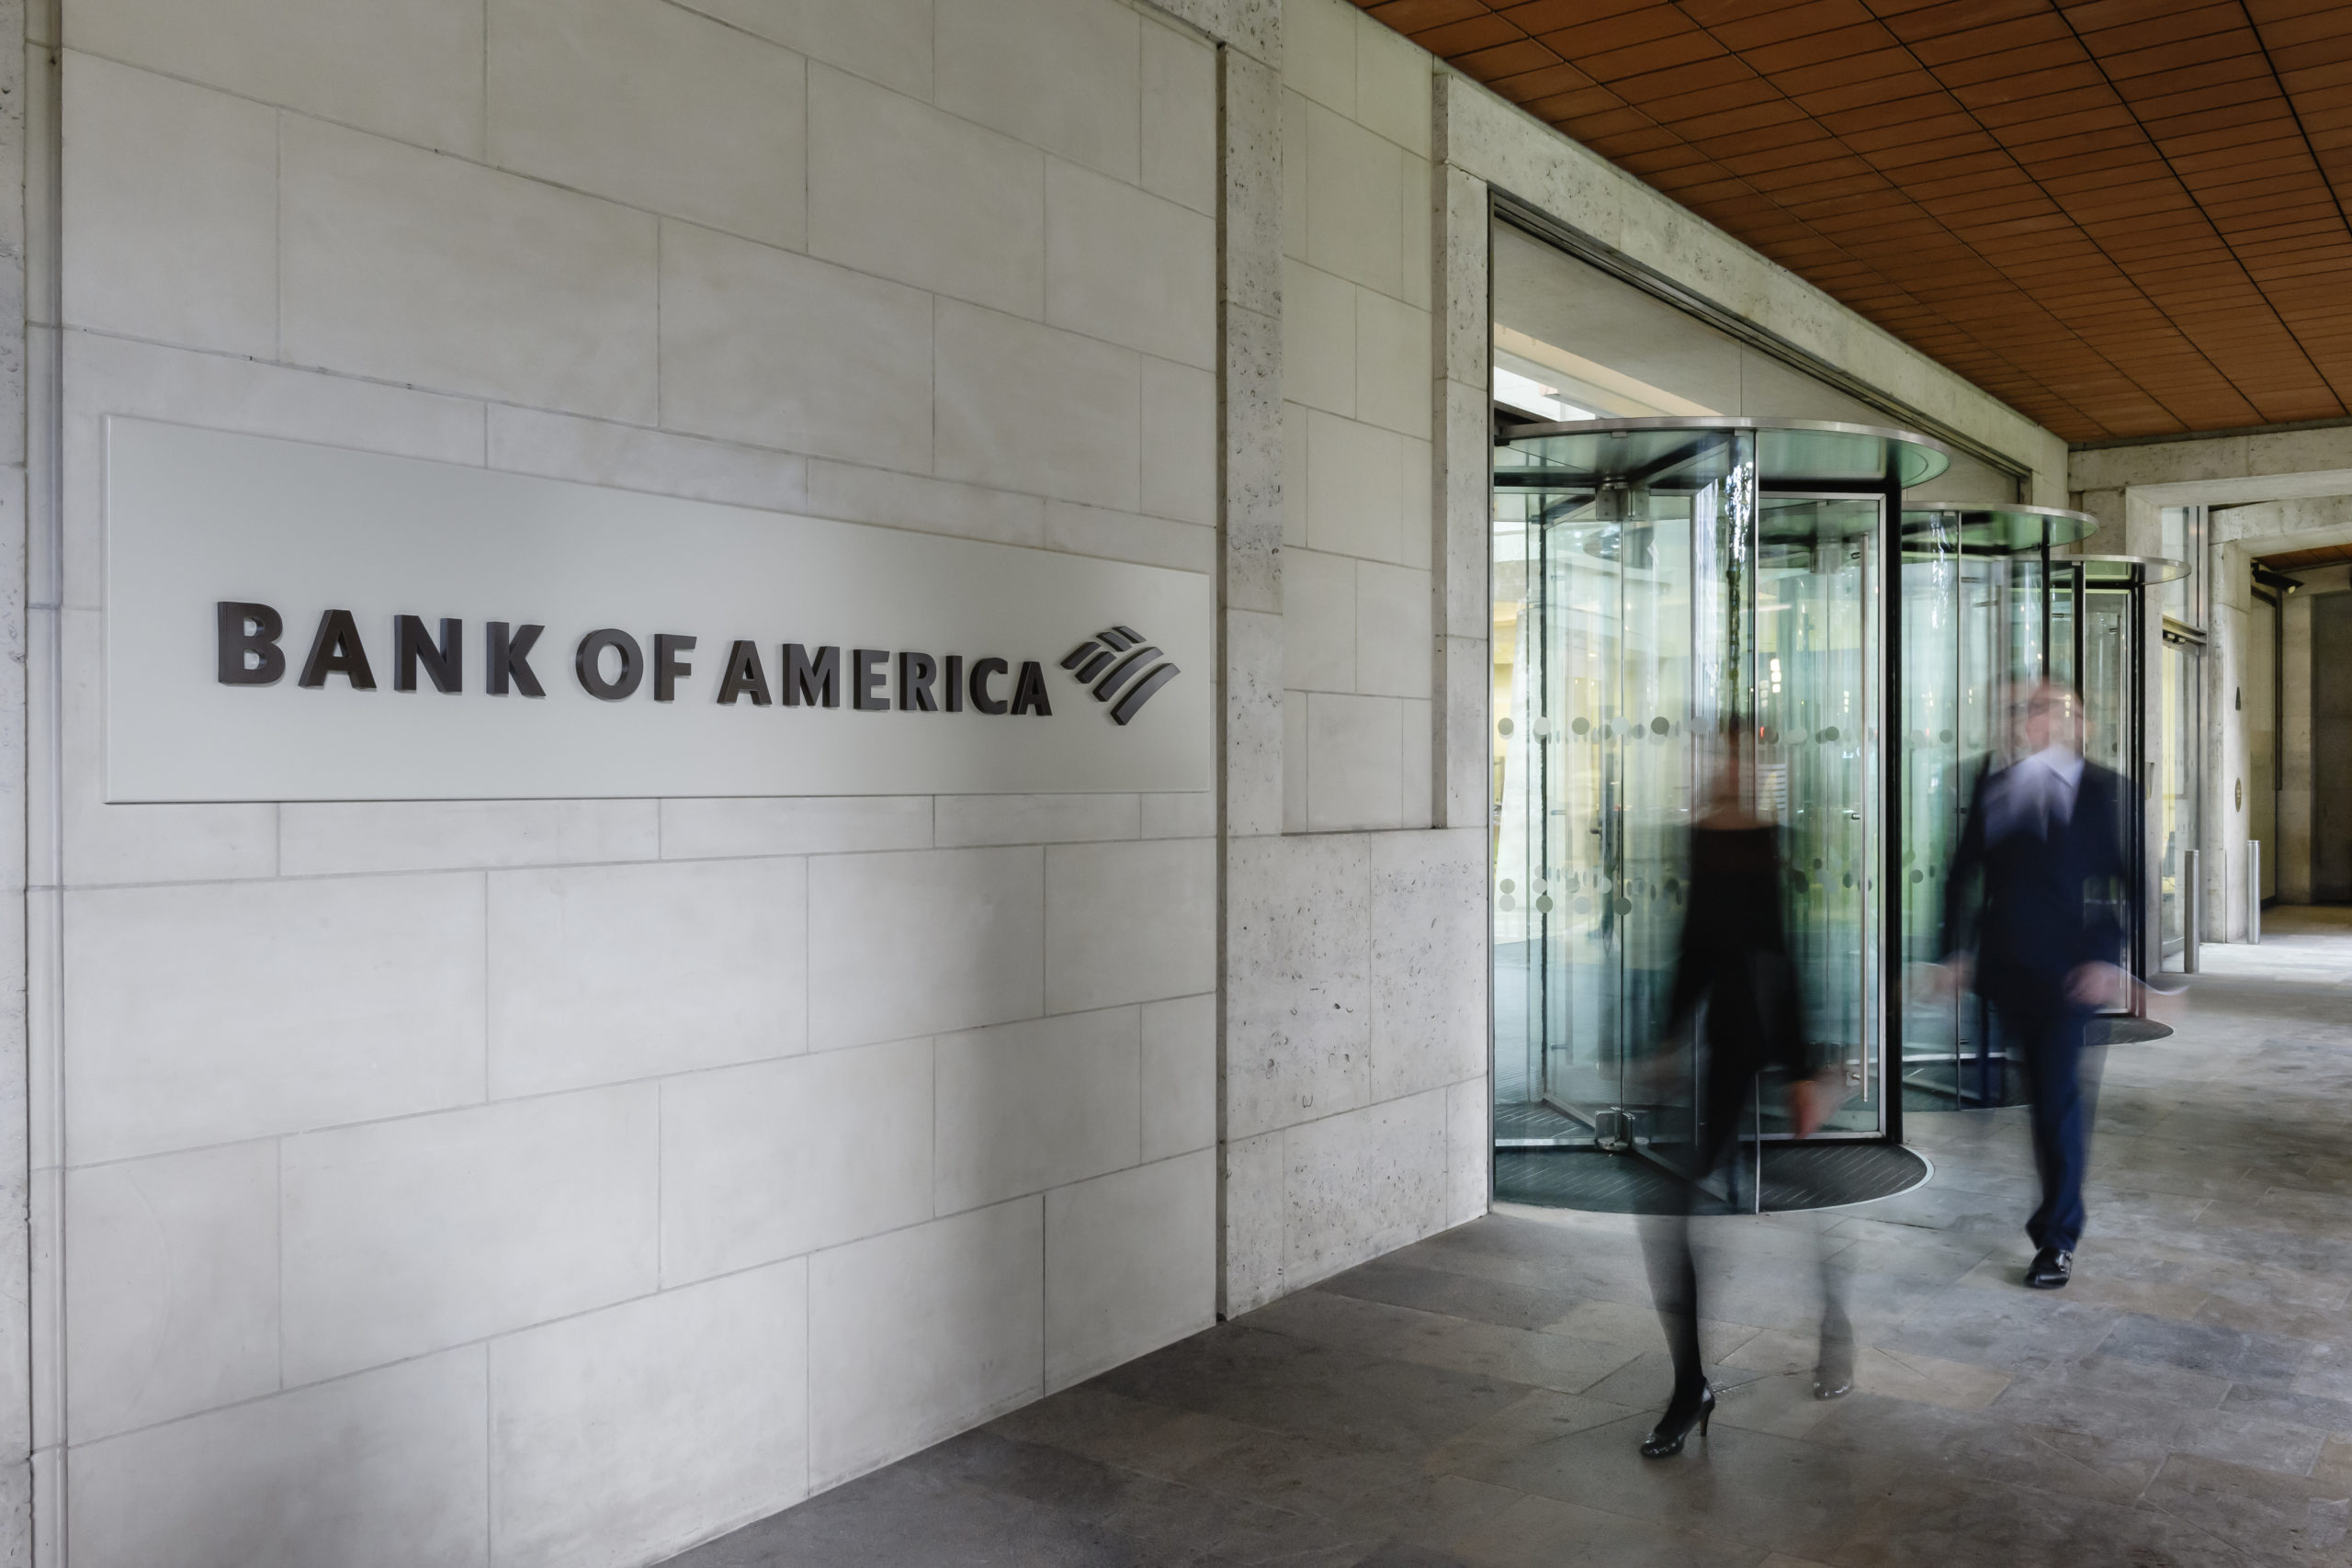 Image via Bank of America